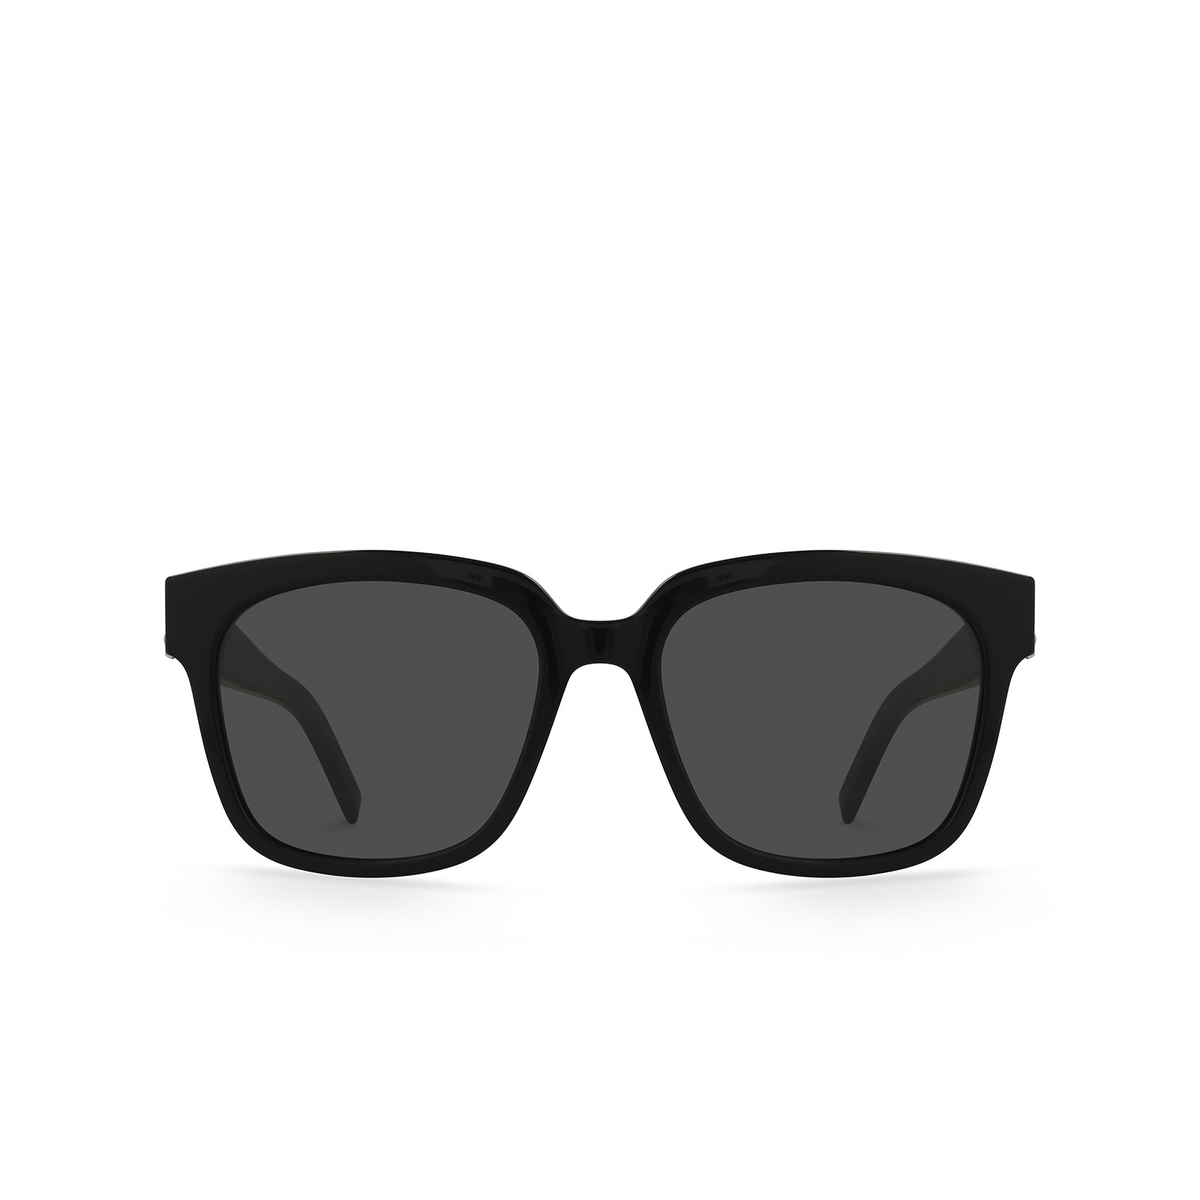 Saint Laurent SL M40 Sunglasses 003 Black - front view